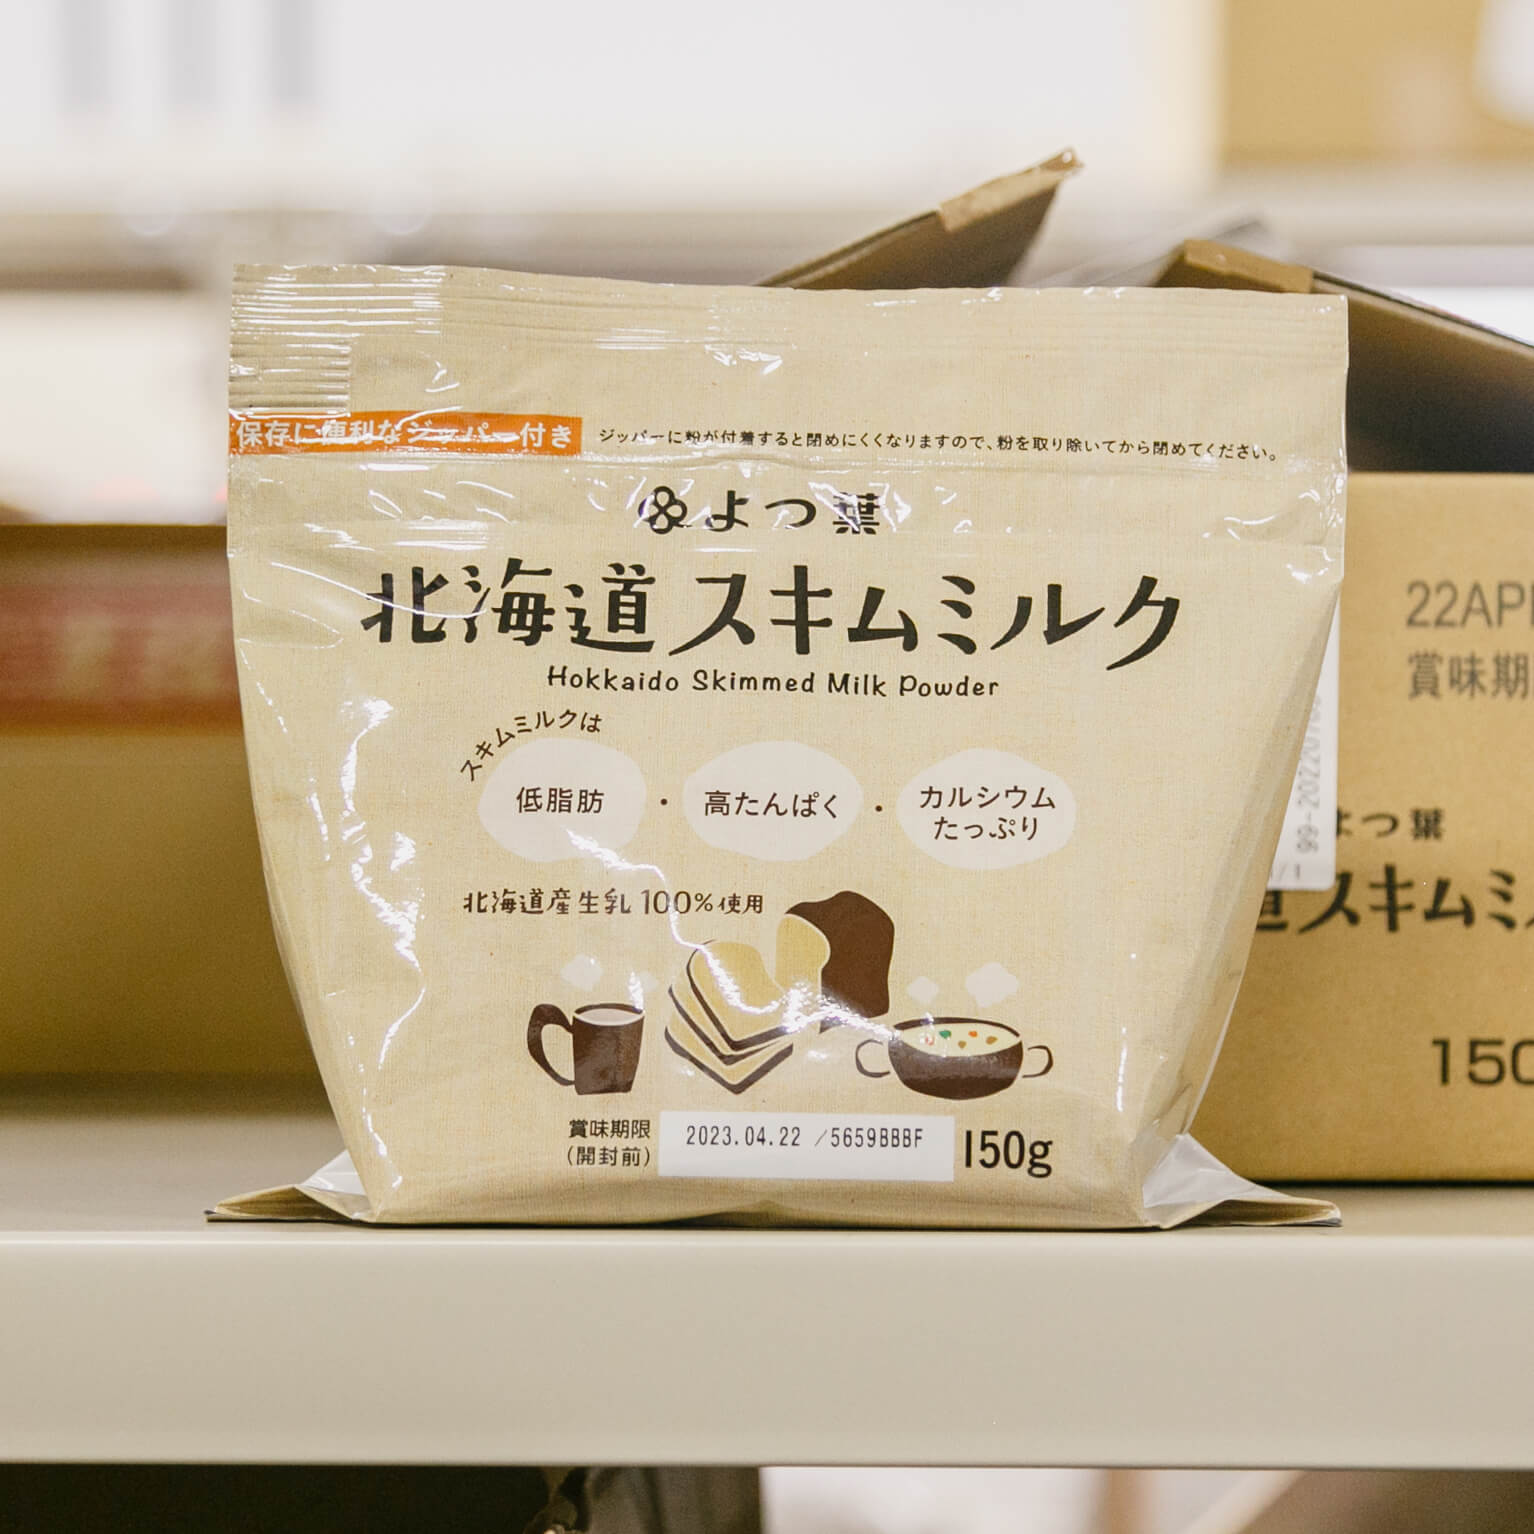 あなたにおすすめの商品 パイオニア企画 スキムミルク 個包装 6g×30袋 脱脂粉乳 北海道産生乳使用